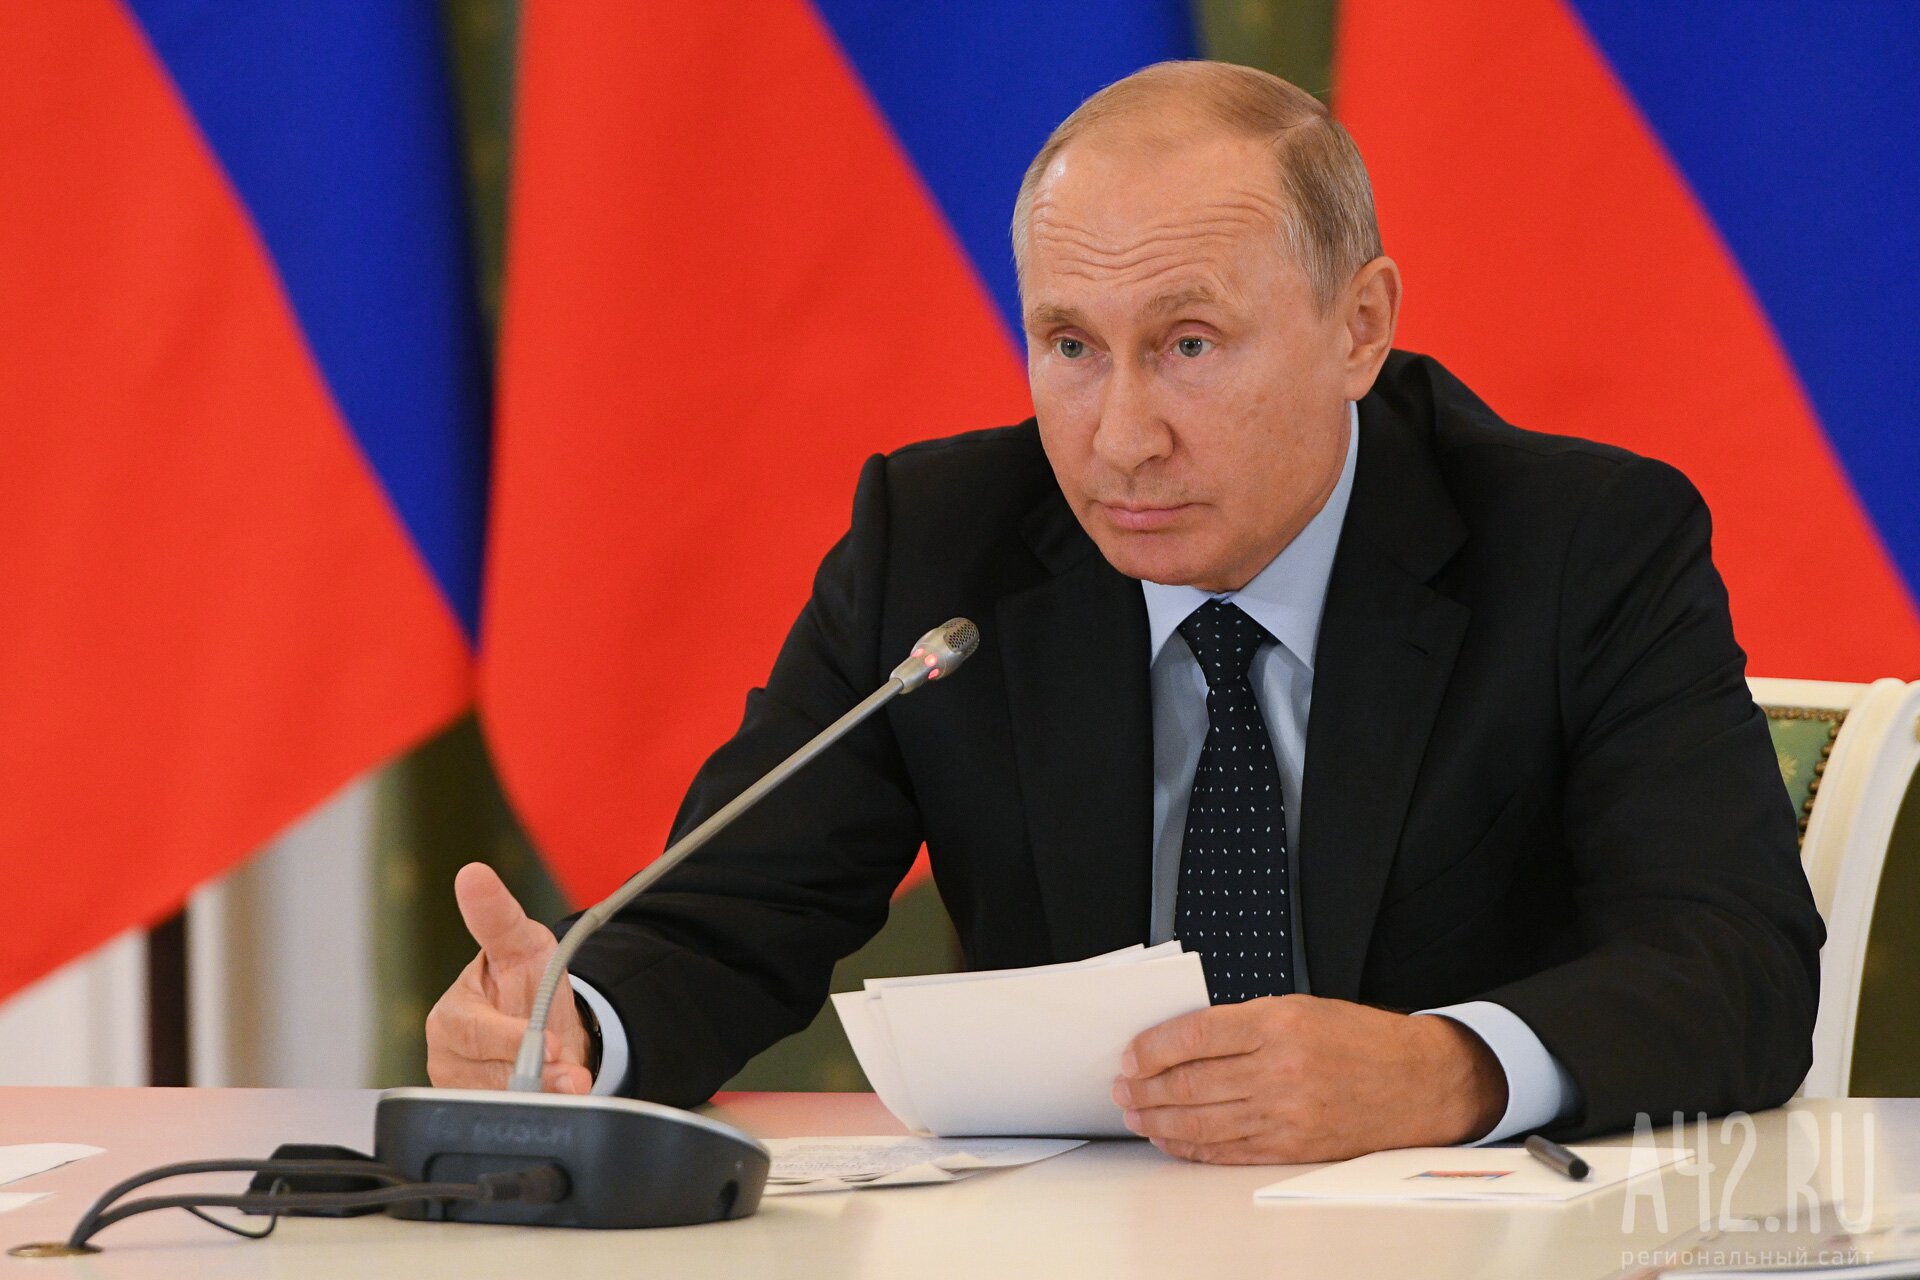 Путин заявил, что Западу придётся начать равноправный разговор об общем будущем в мировых делах